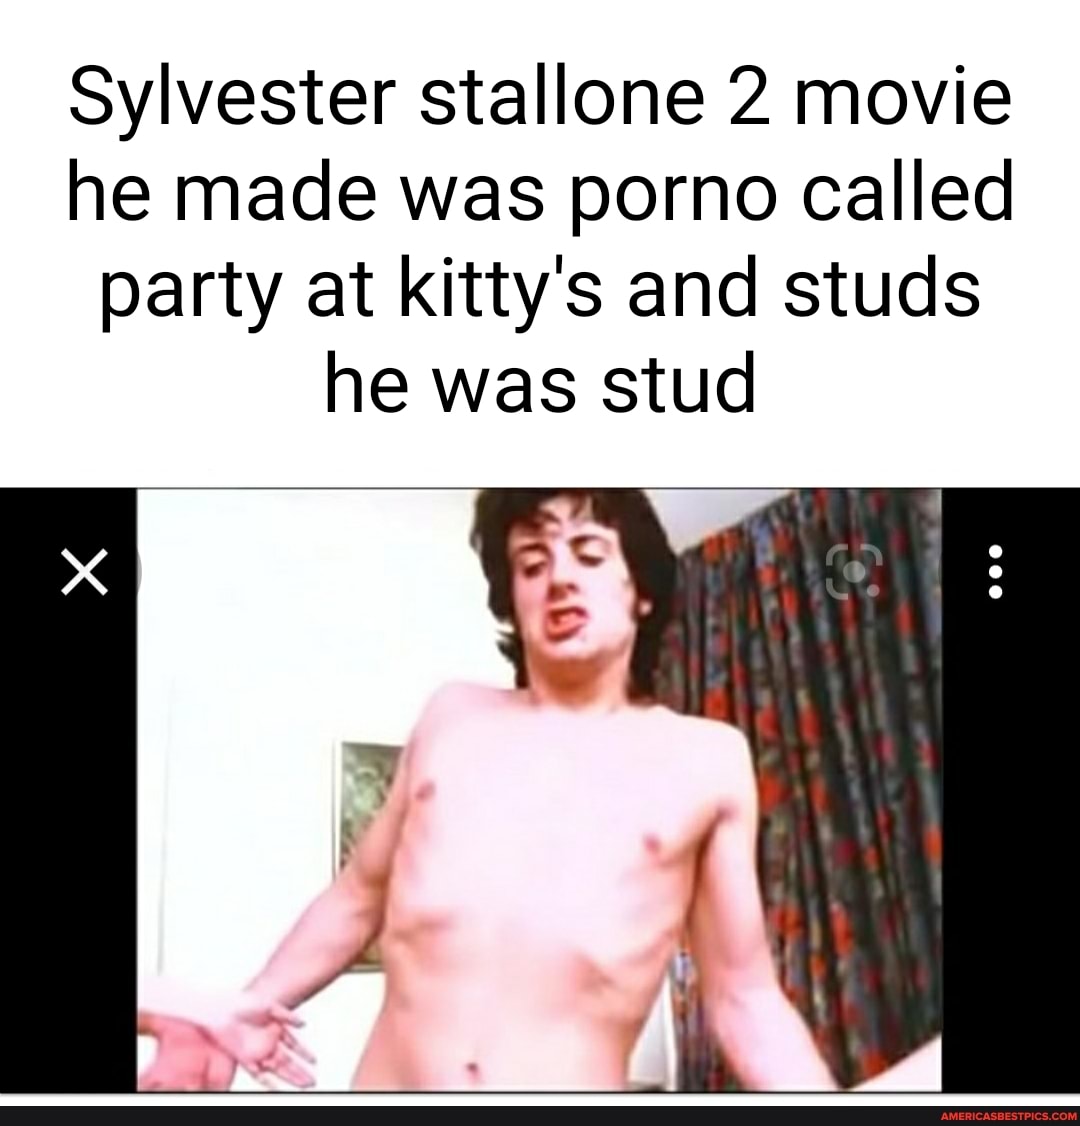 Porno sylvester stallone The Party